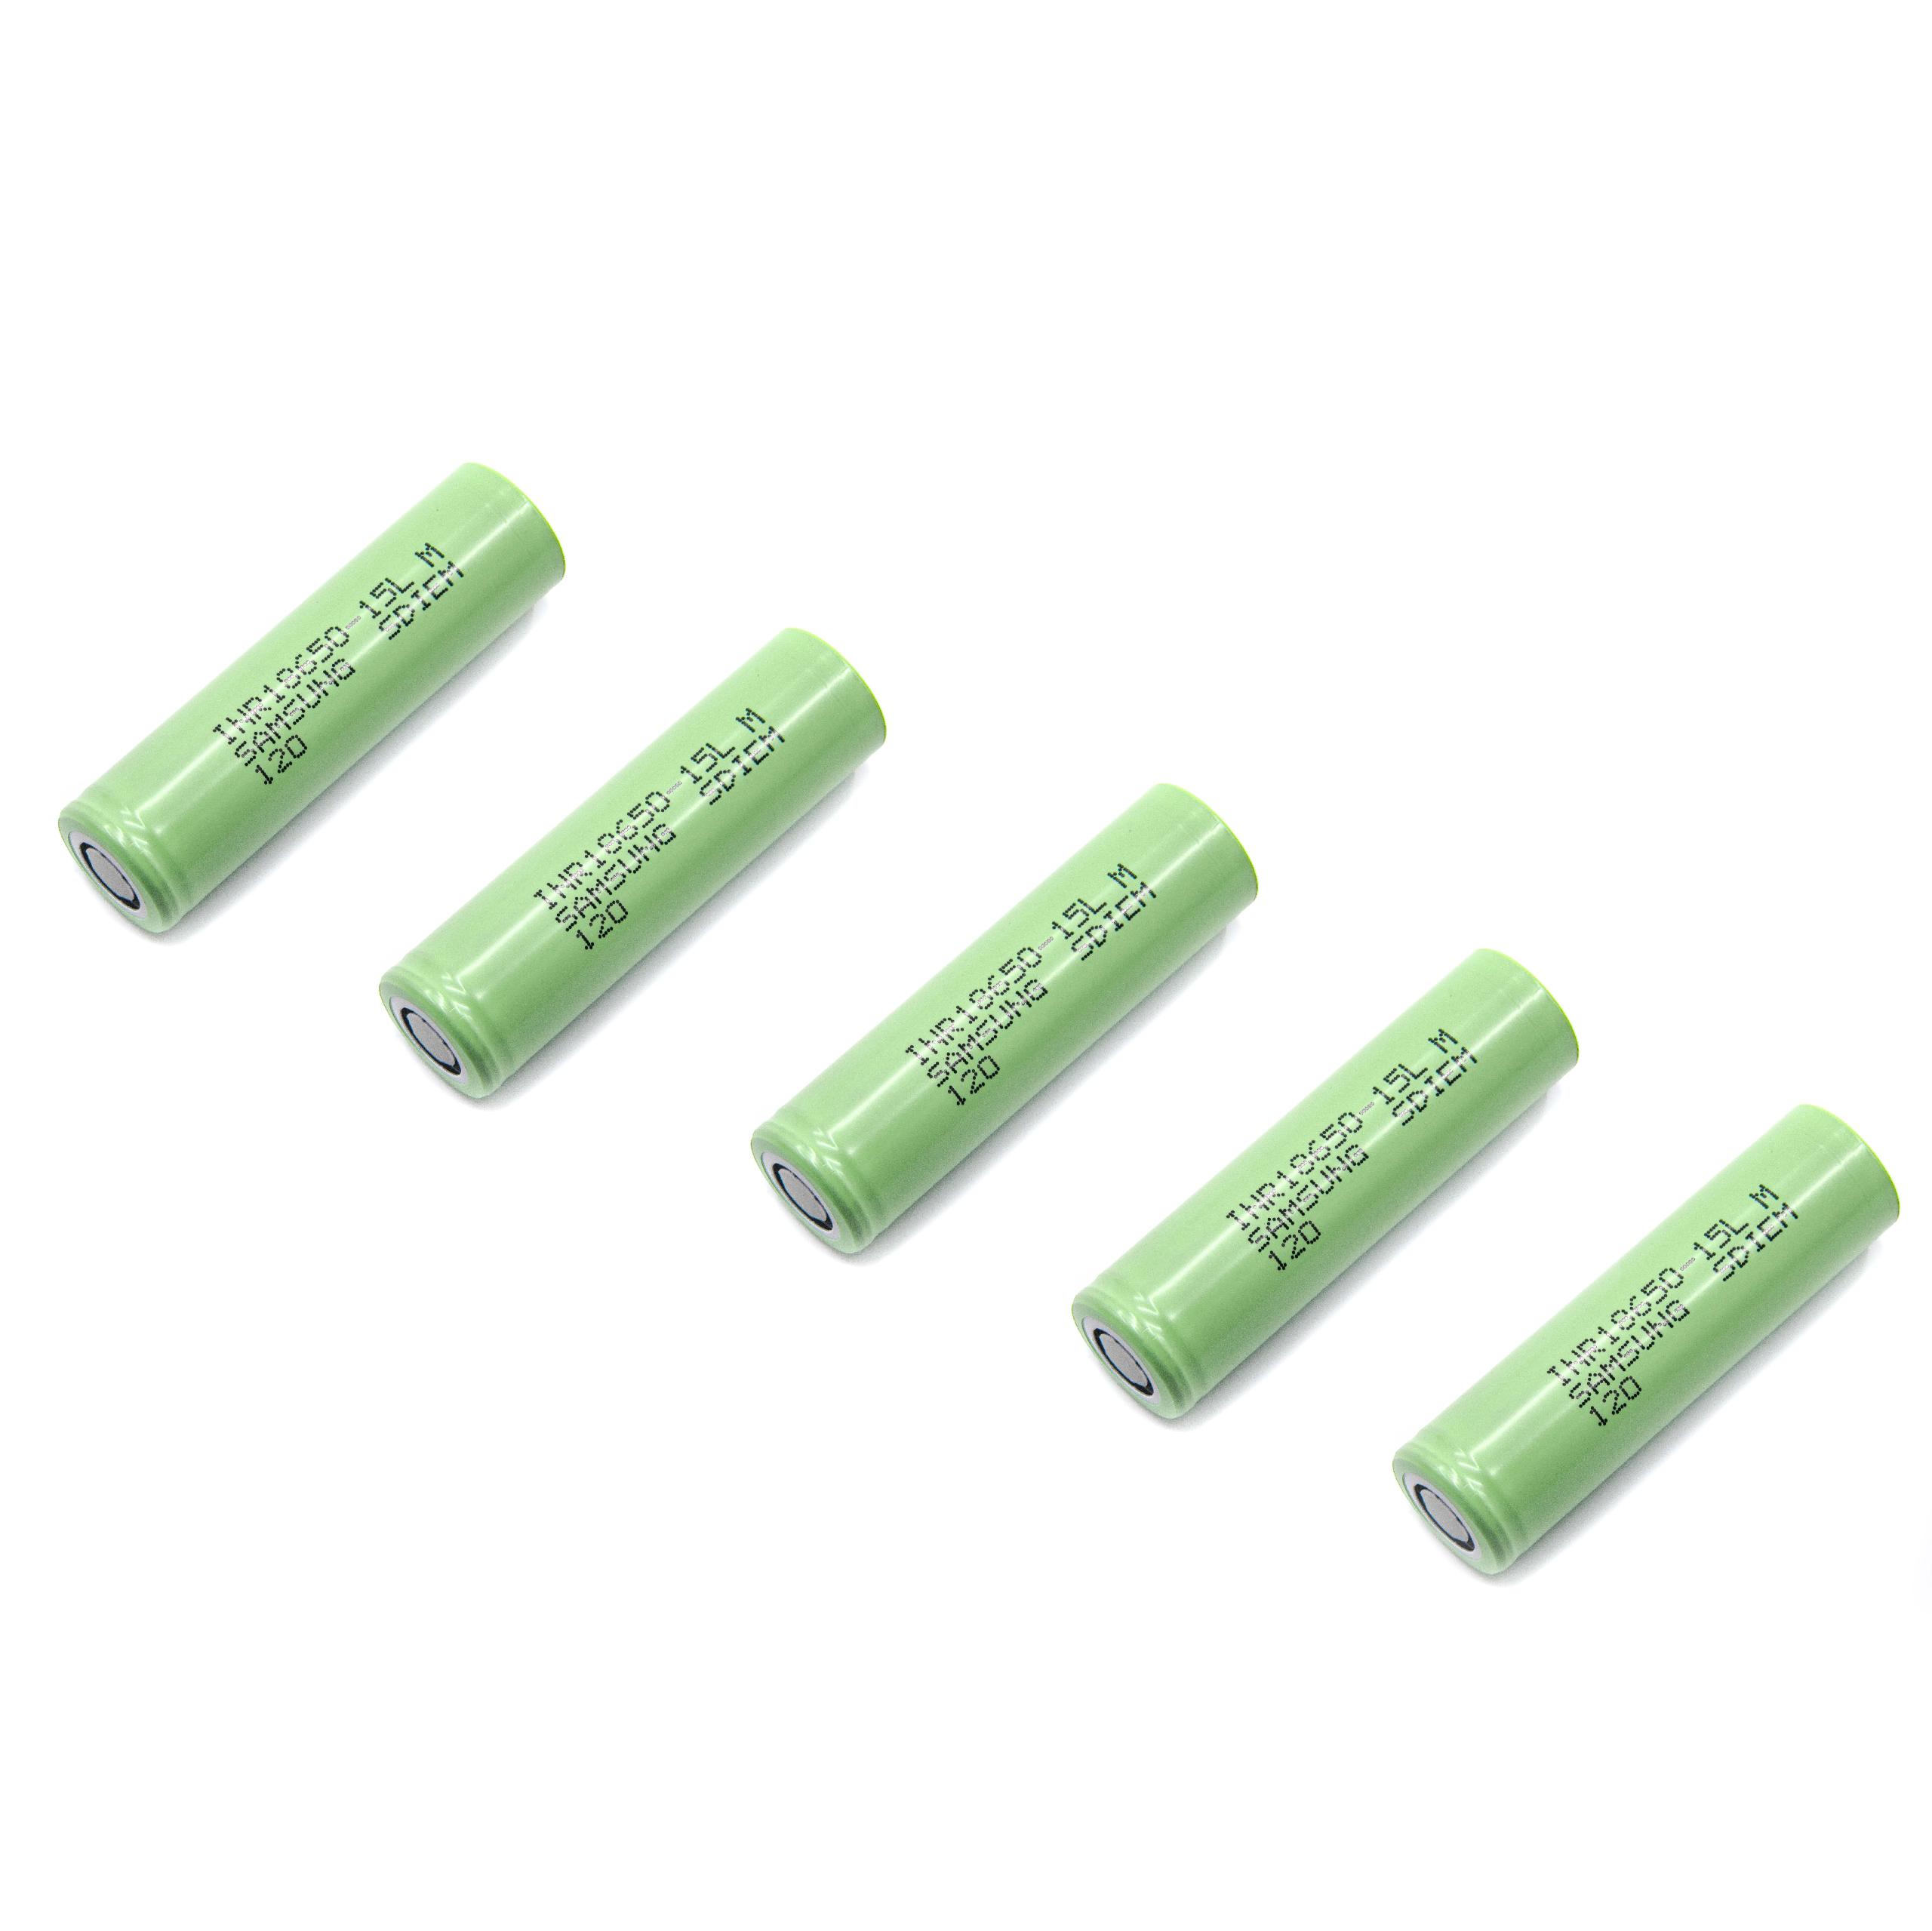 Cellules de batterie (5 piles) - 1500mAh, 3,6V, LiNiMnCoO2